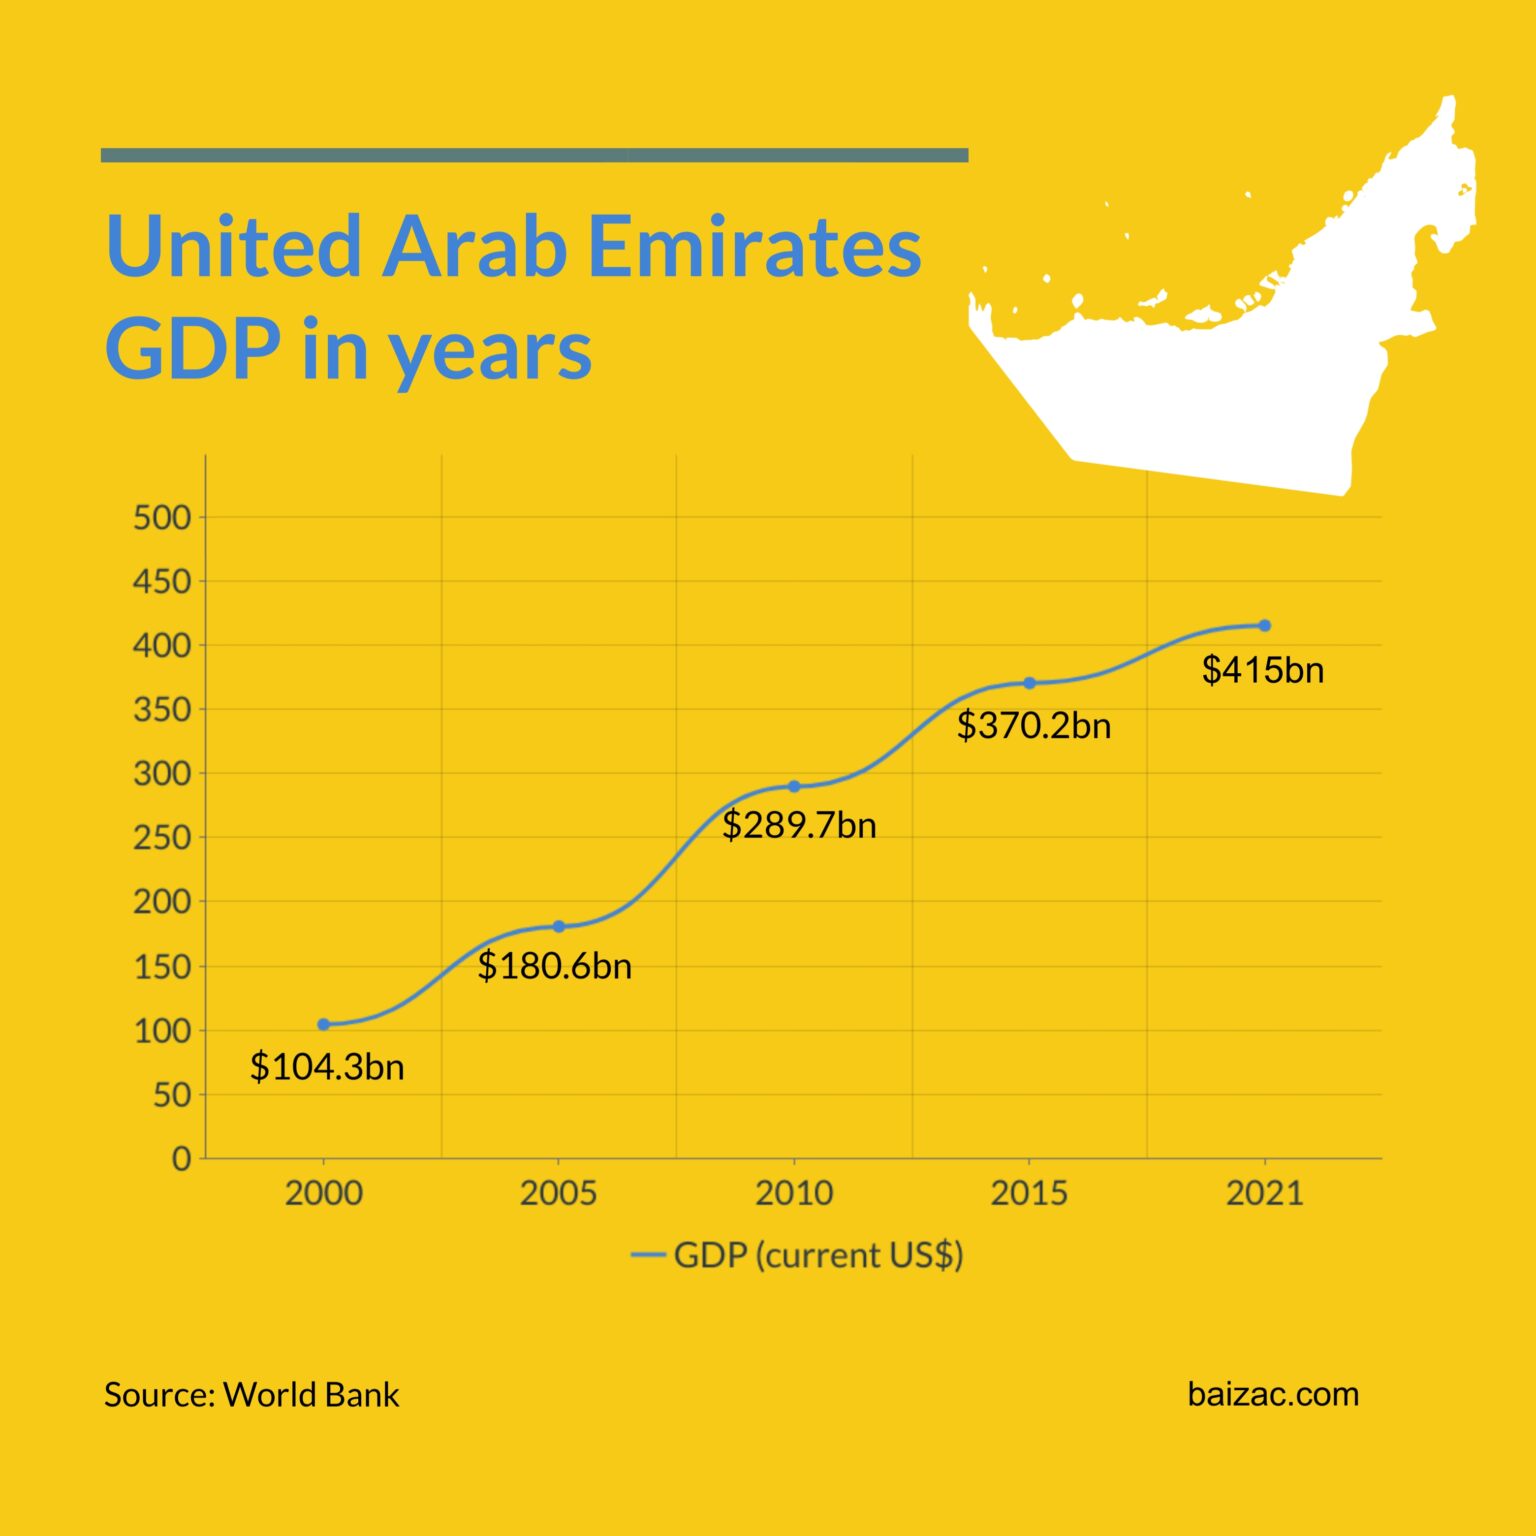 UAE GDP in years